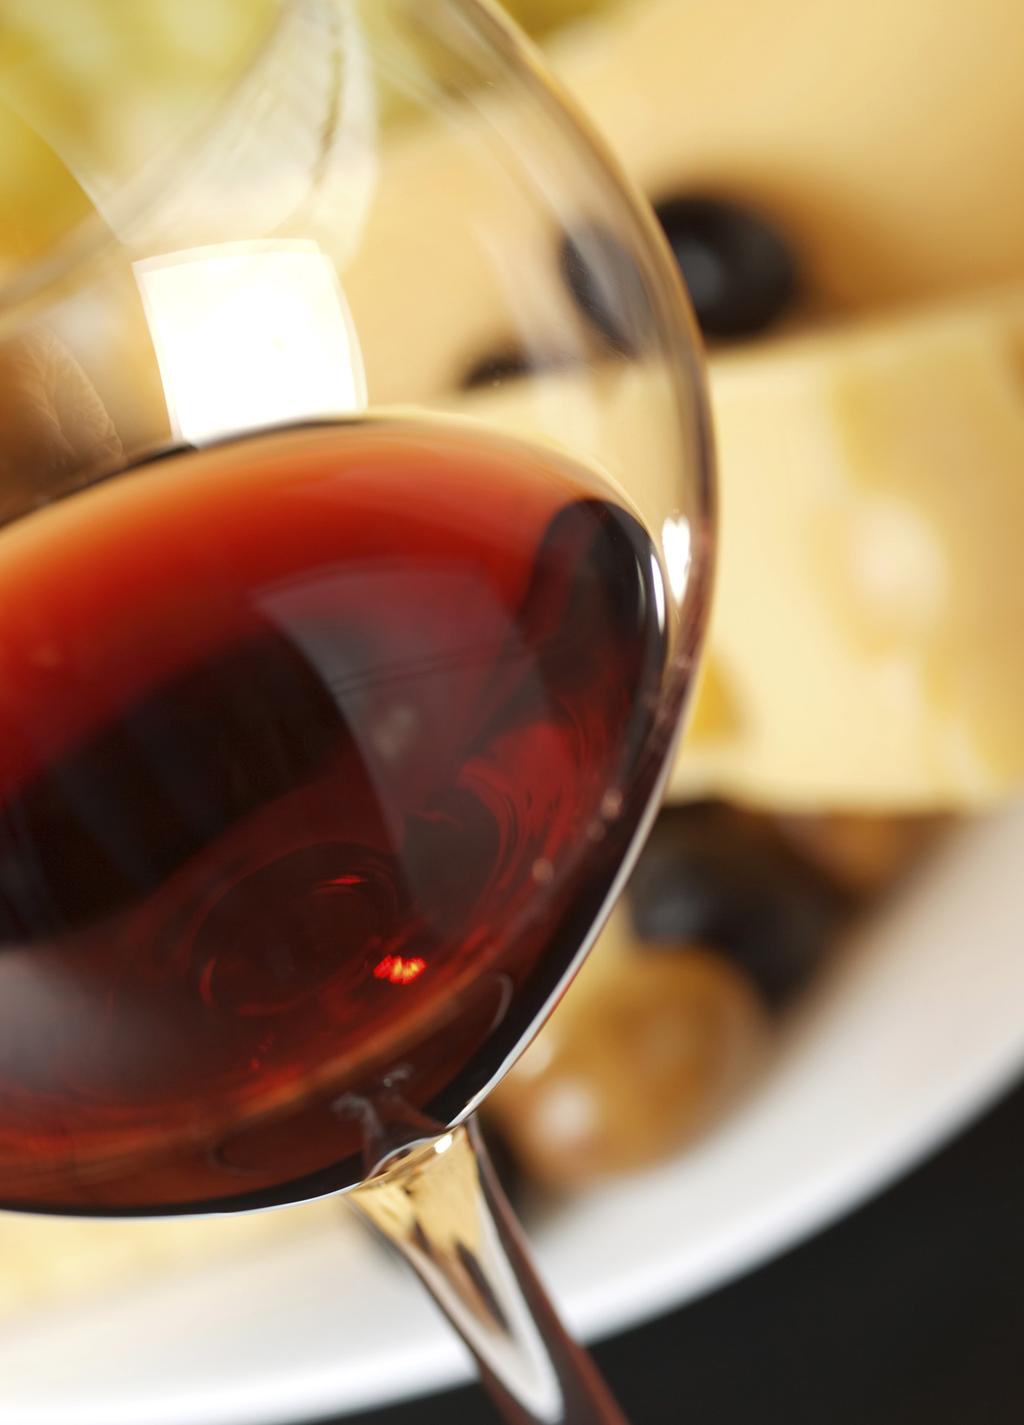 WEINKELLER- FÜHRUNG Der Puls jeden Weinkenners schlägt schneller, wenn er einen Gang durch den reichen Schatz des Weinkellers machen darf.